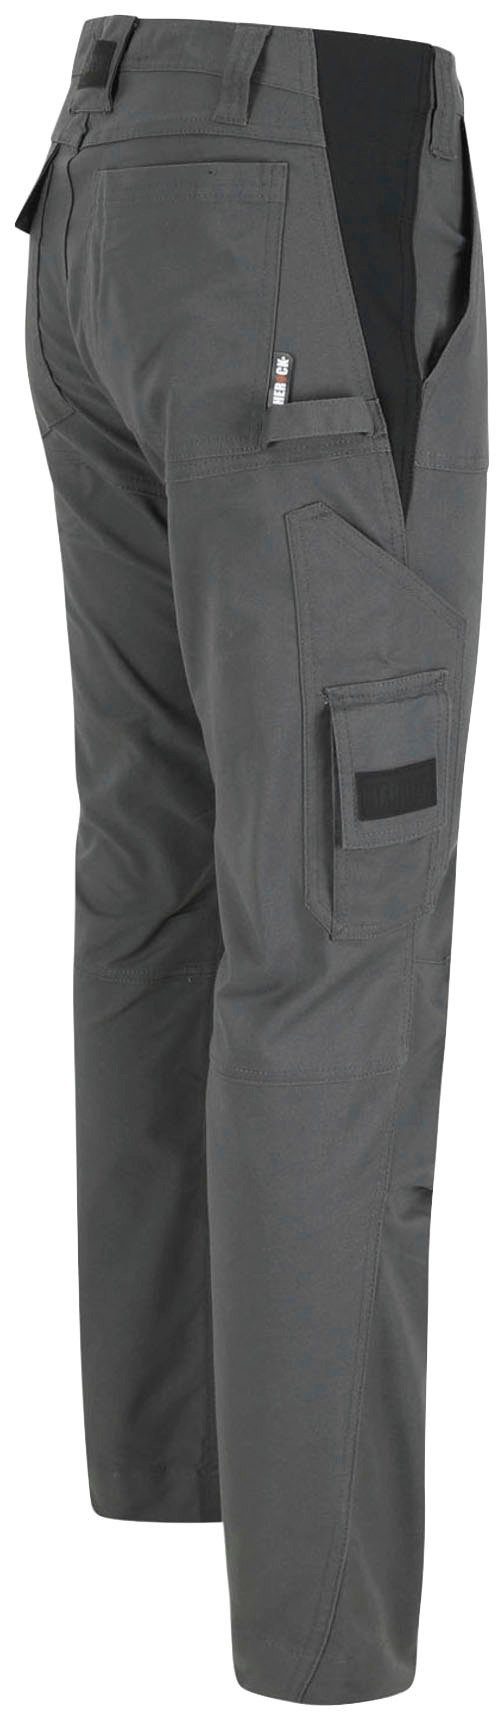 Schnalle Multi-Pocket, Coolmax®-Technologie inkl.Stretchgürtel, mit Torex grau einstellbar (Spar-Set, bis Flaschenöffner, Arbeitshose 130cm) 4-Wege-Stretch, mit Herock